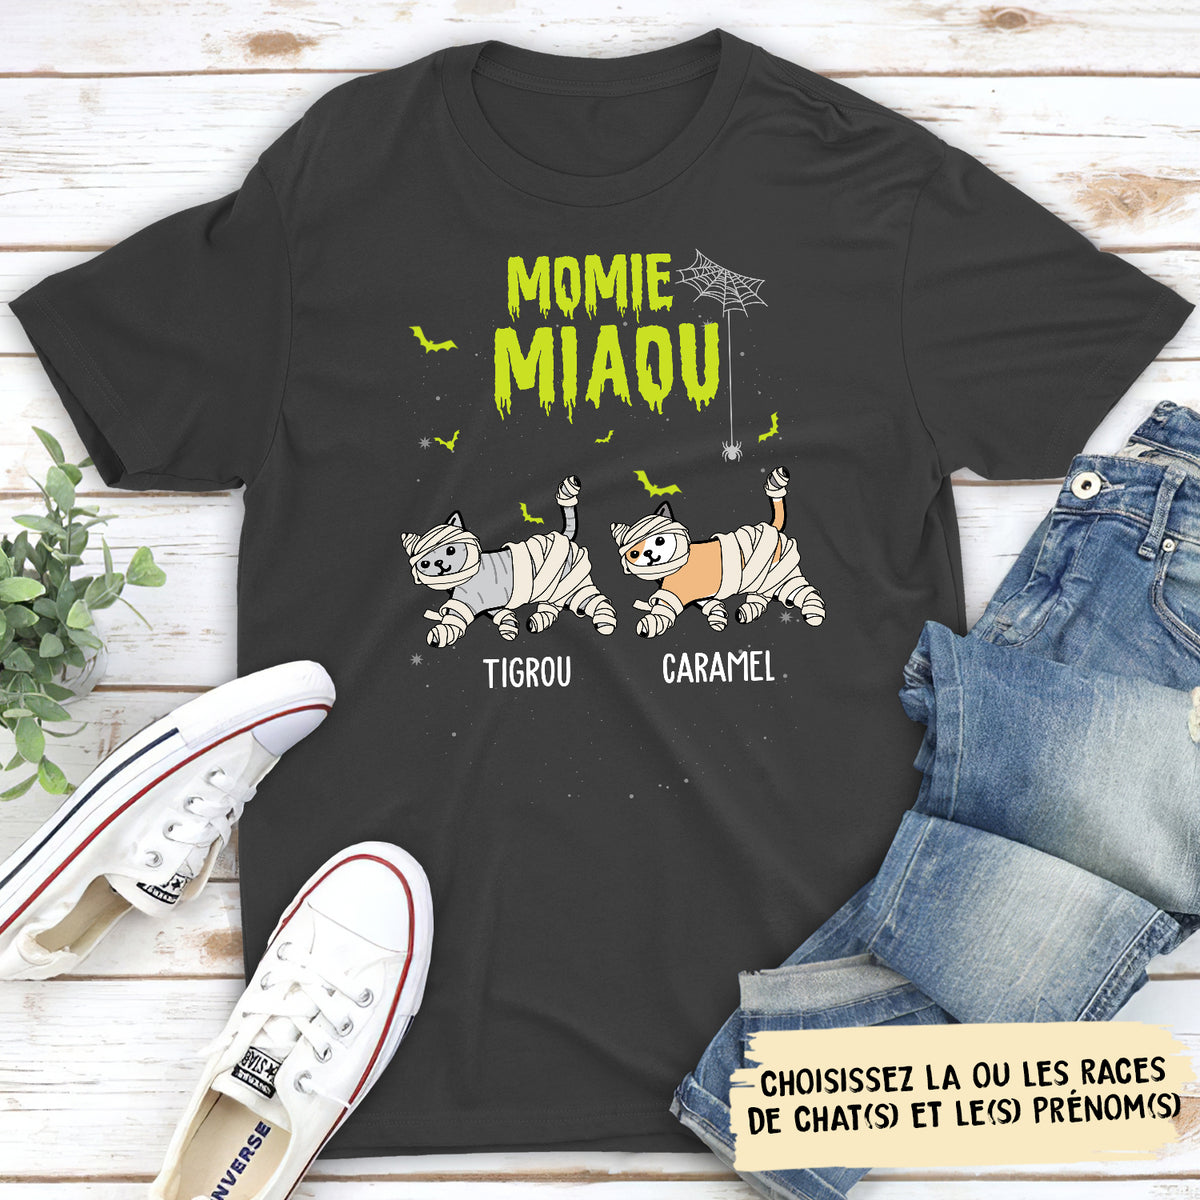 T-shirt Unisex Personnalisé - Momie Miaou